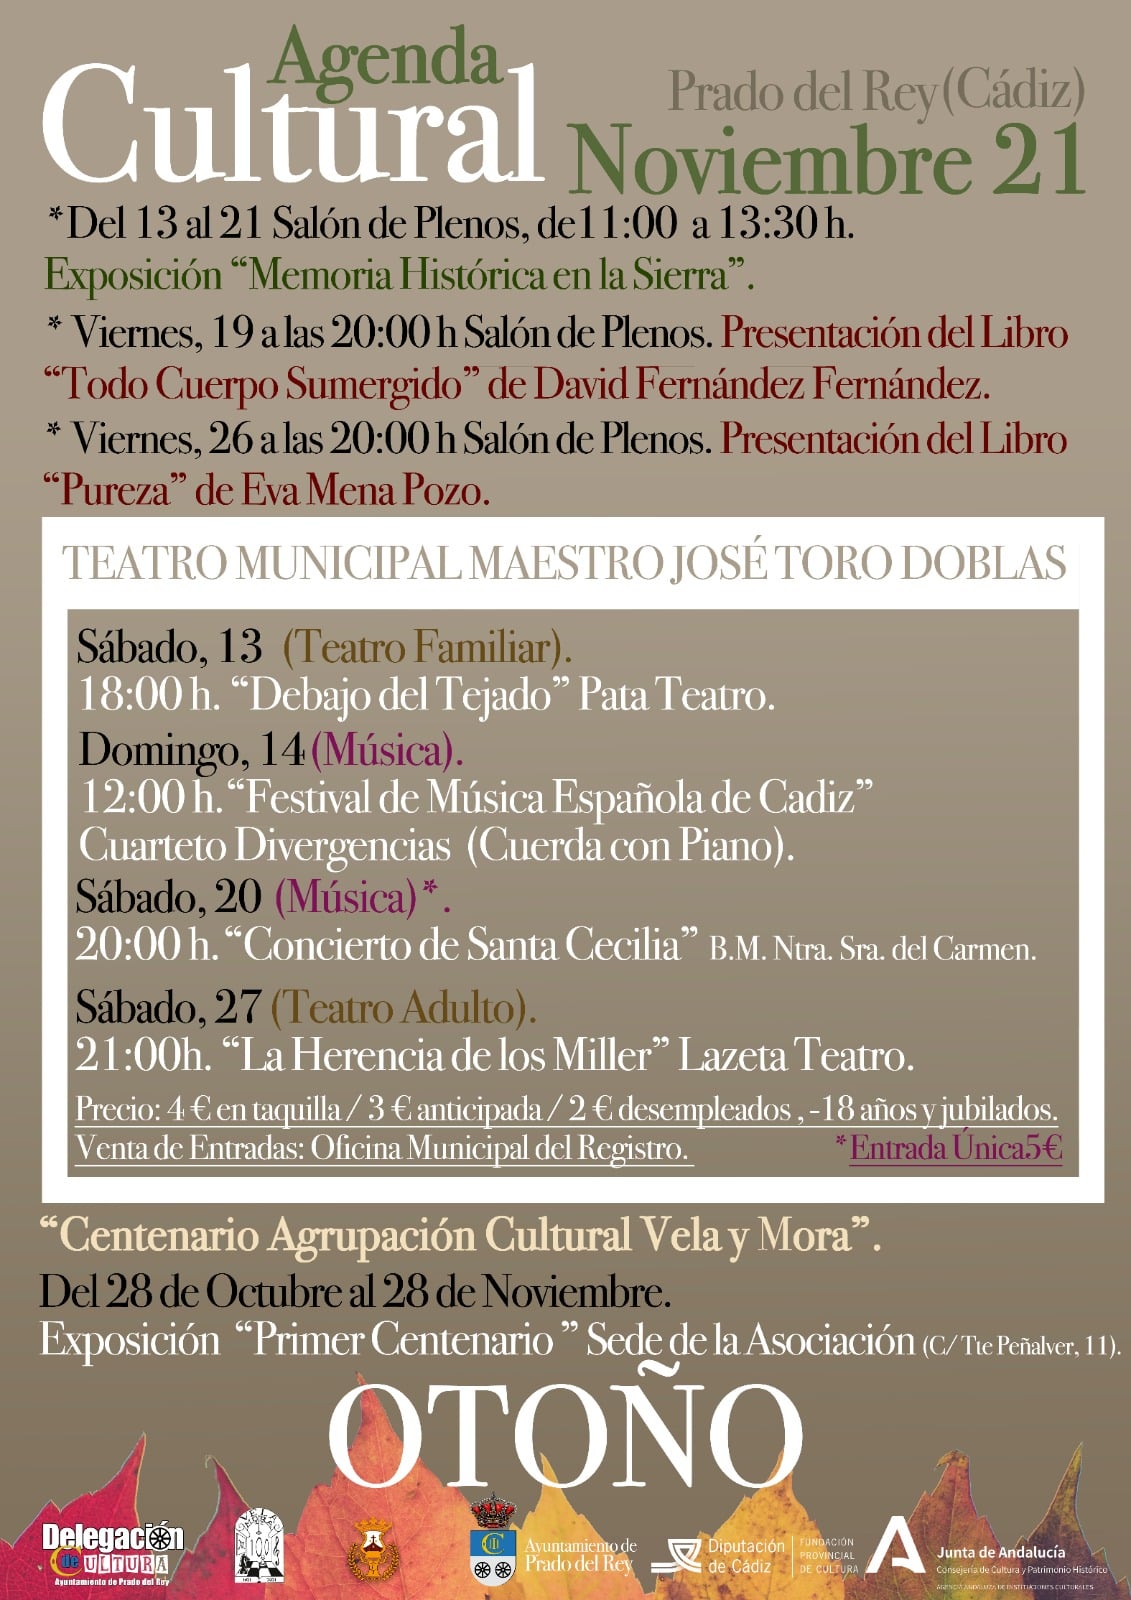 sites/default/files/2021/agenda/eventos-culturales/agenda-cultural-prado-rey.jpg